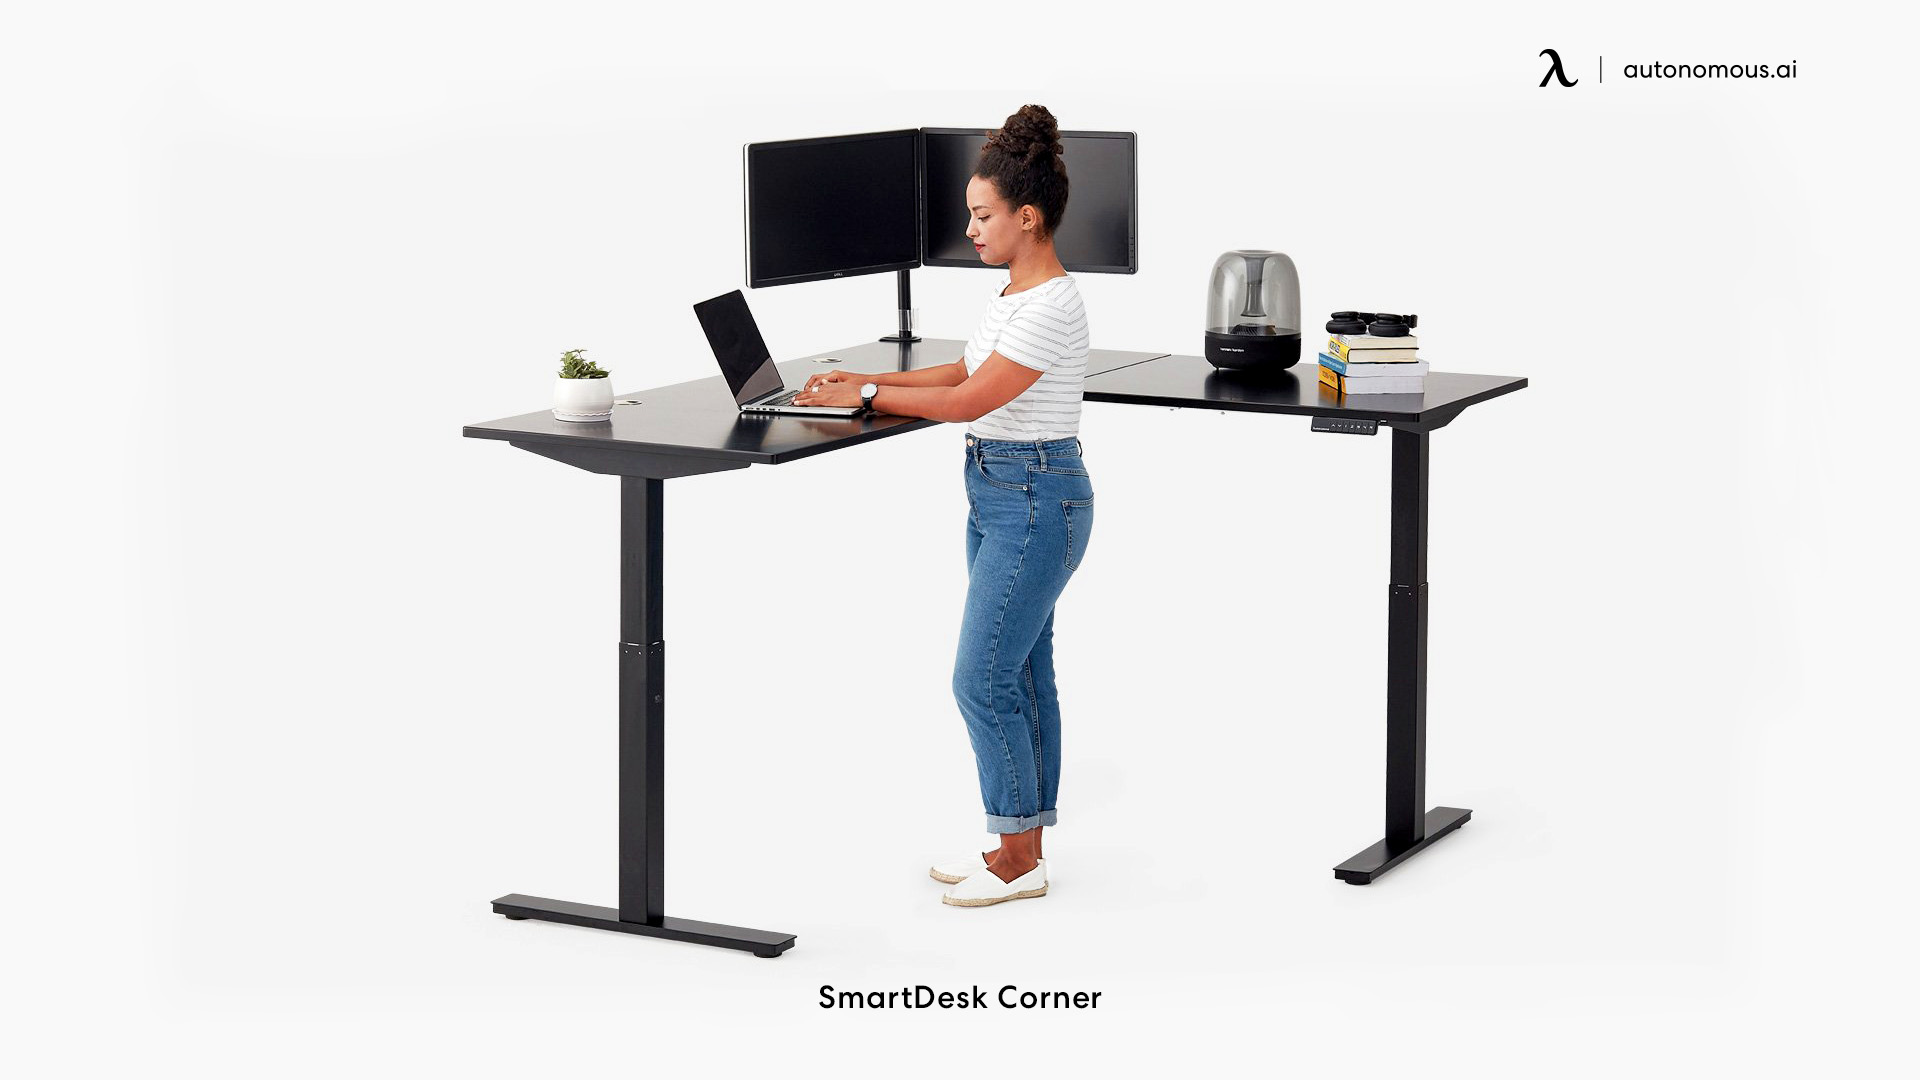 SmartDesk Corner ergonomic desk height